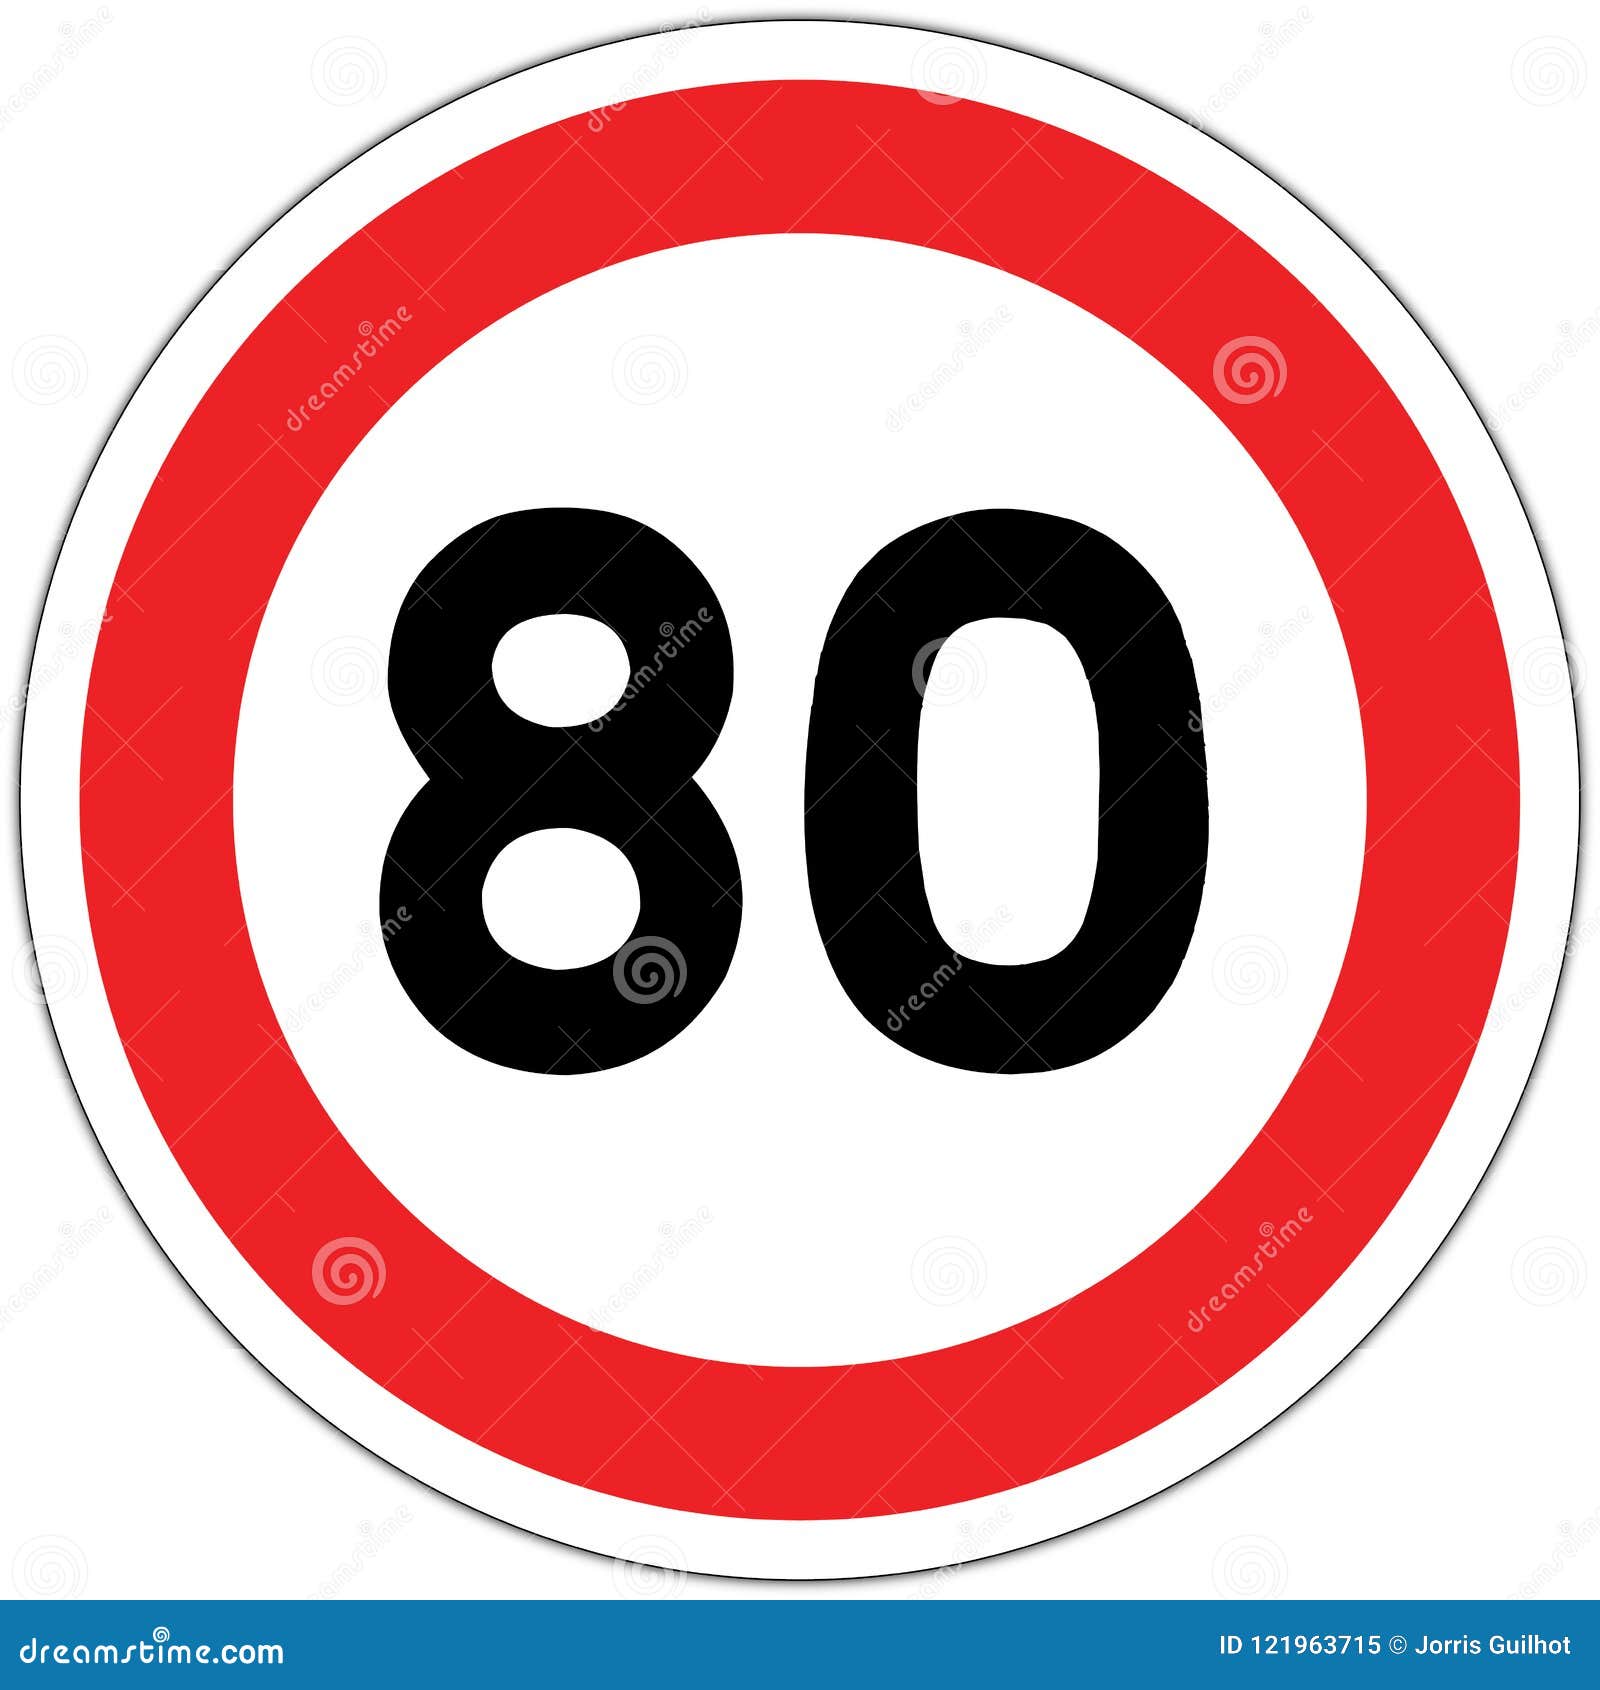 panneau de signalisation routier en france: limitation ÃÂ  80 km/h